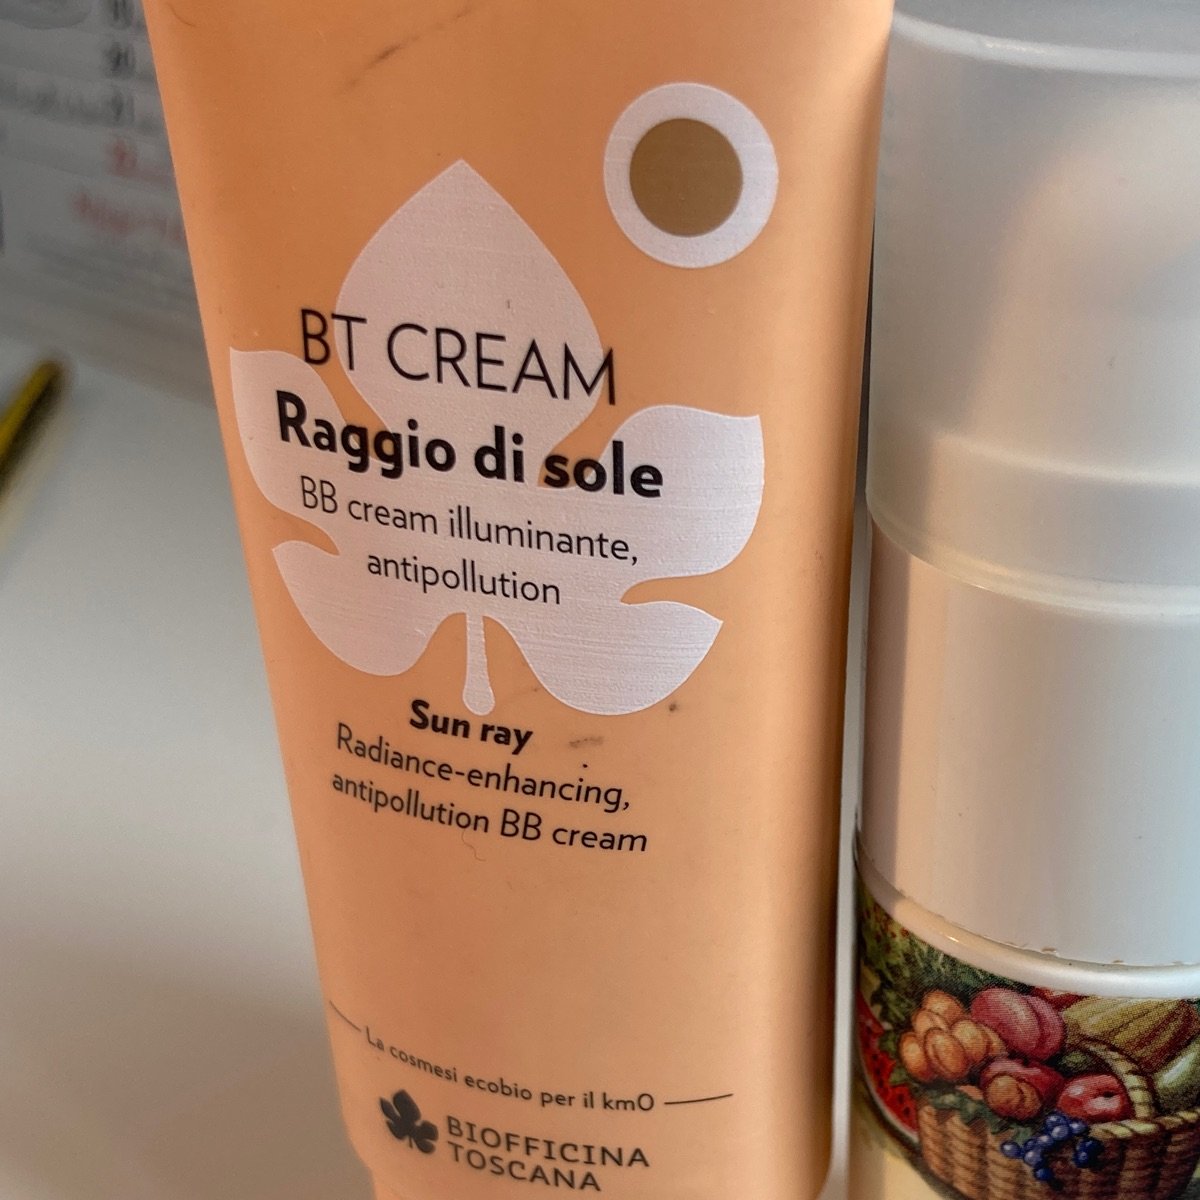 Biofficina Toscana BB cream Raggio Di Sole Reviews | abillion